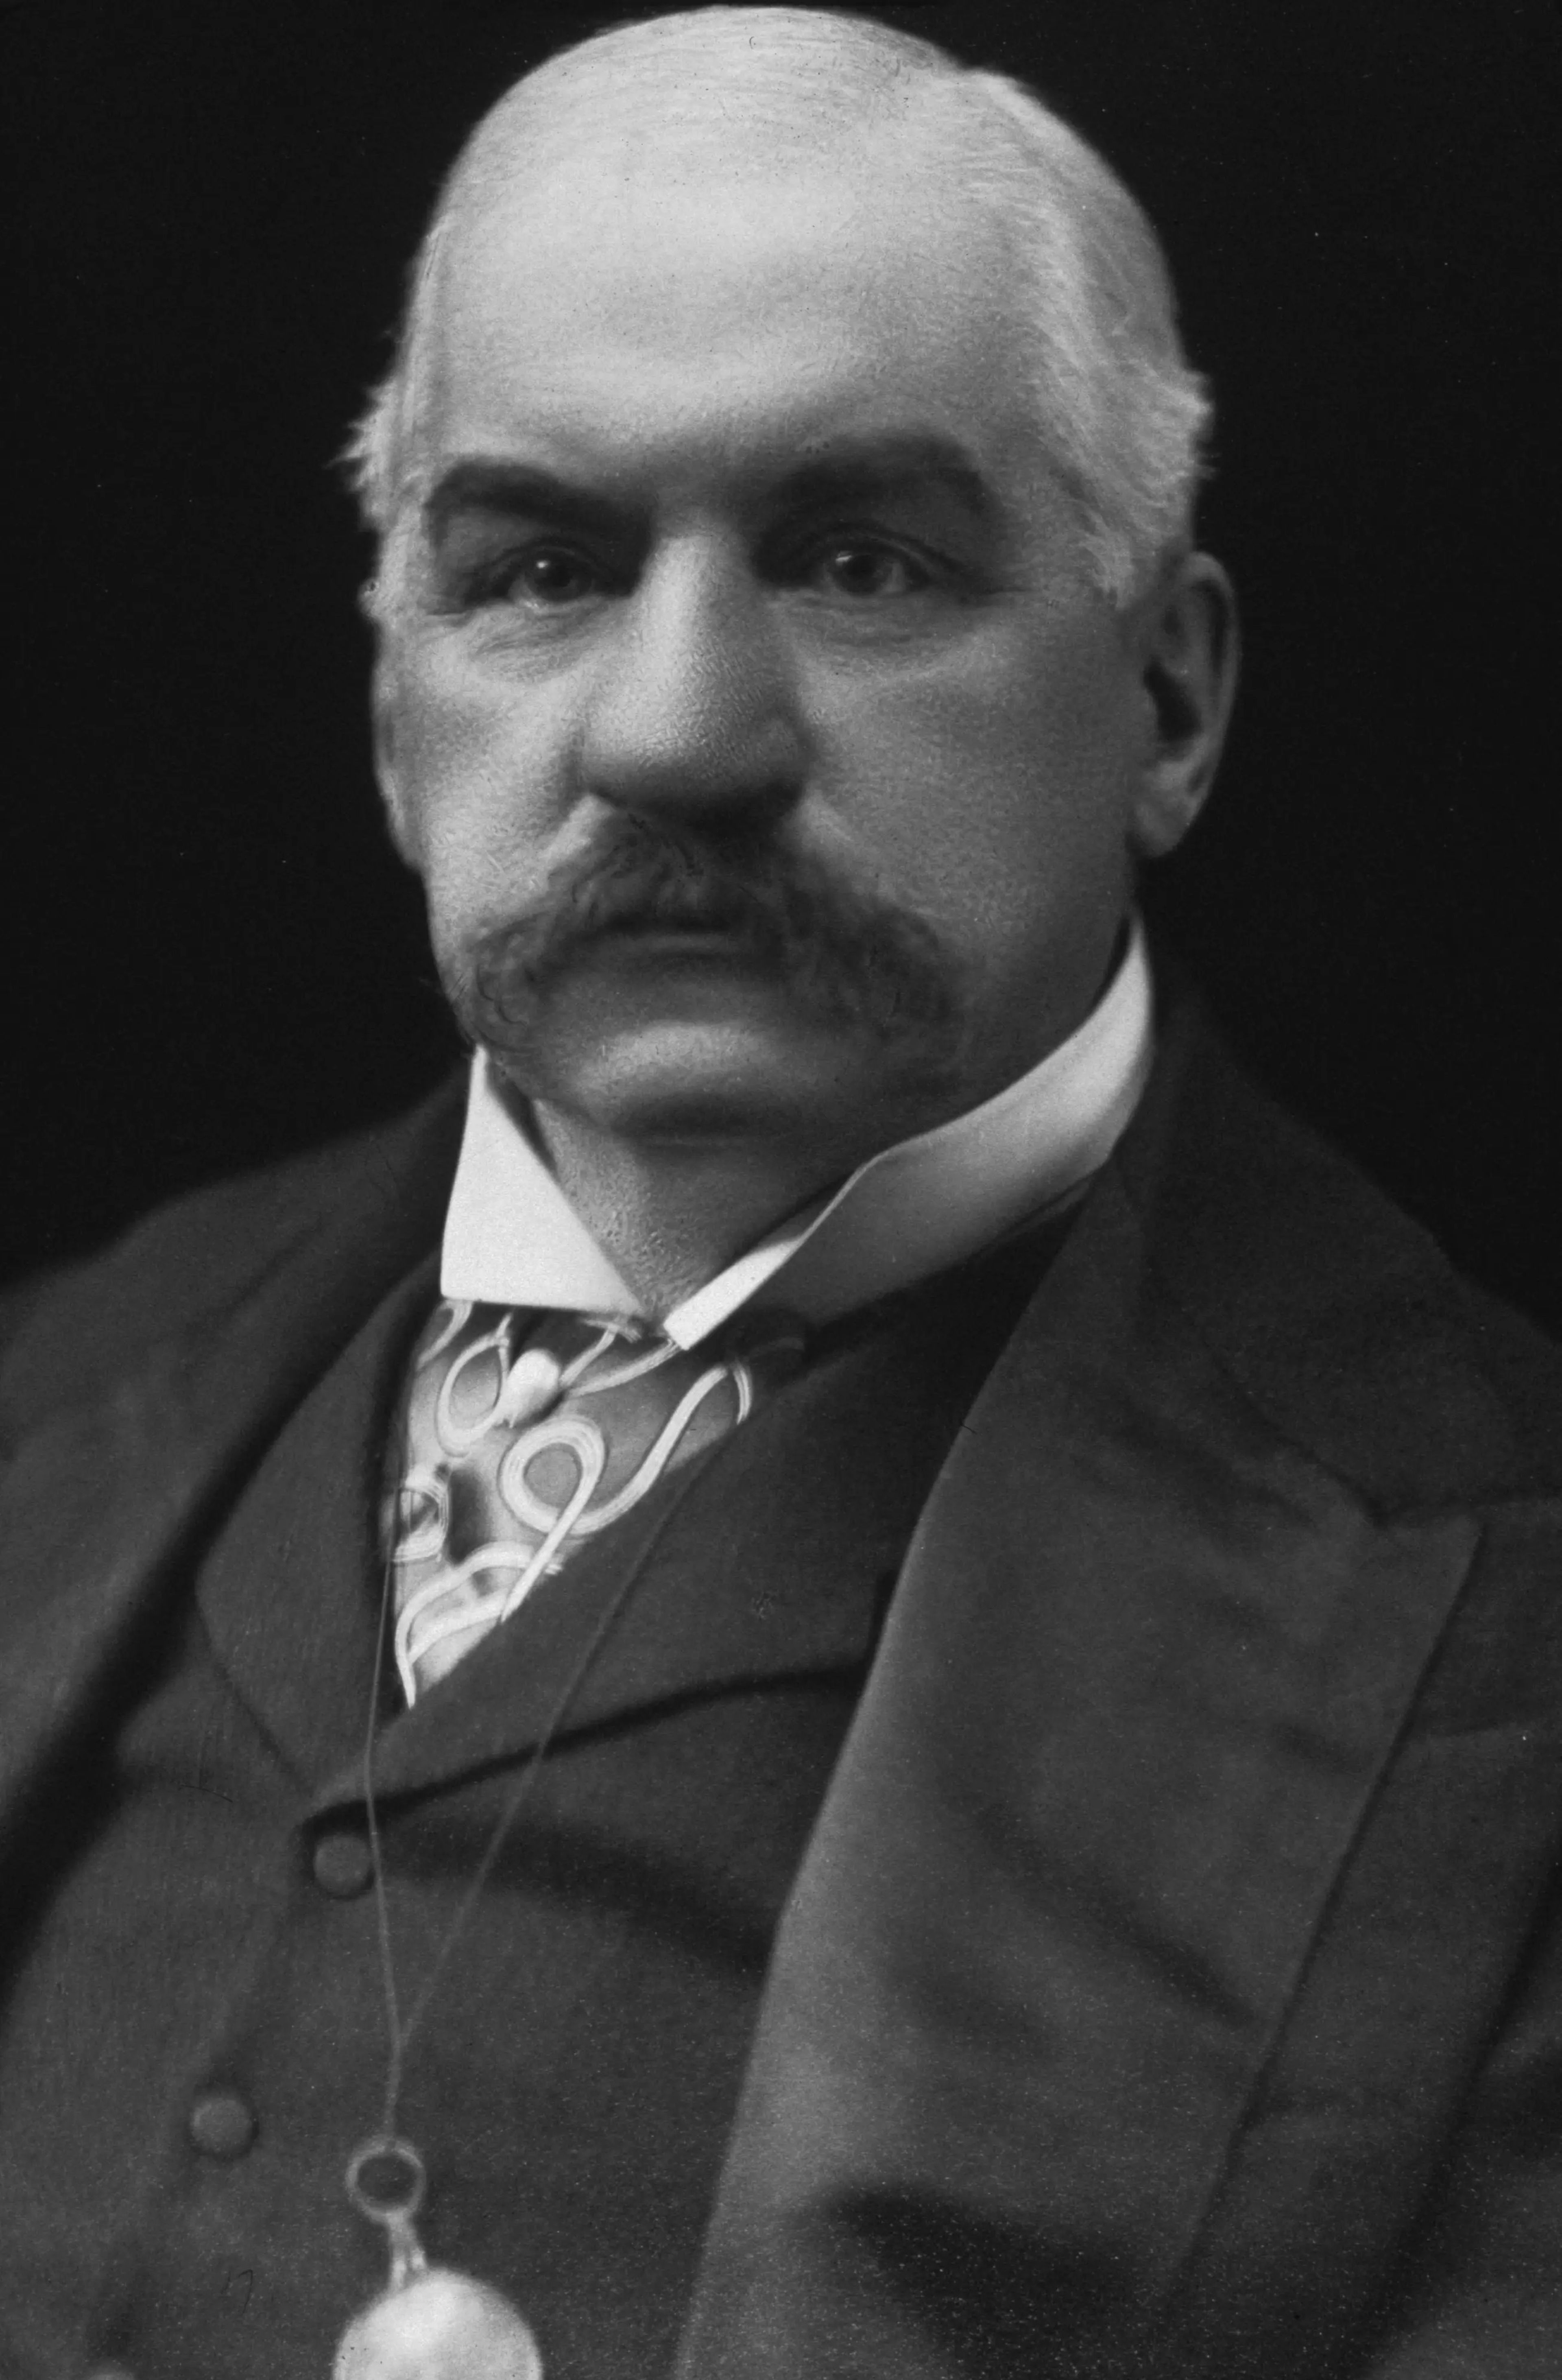 Un retrato de JP Morgan hacia 1900.